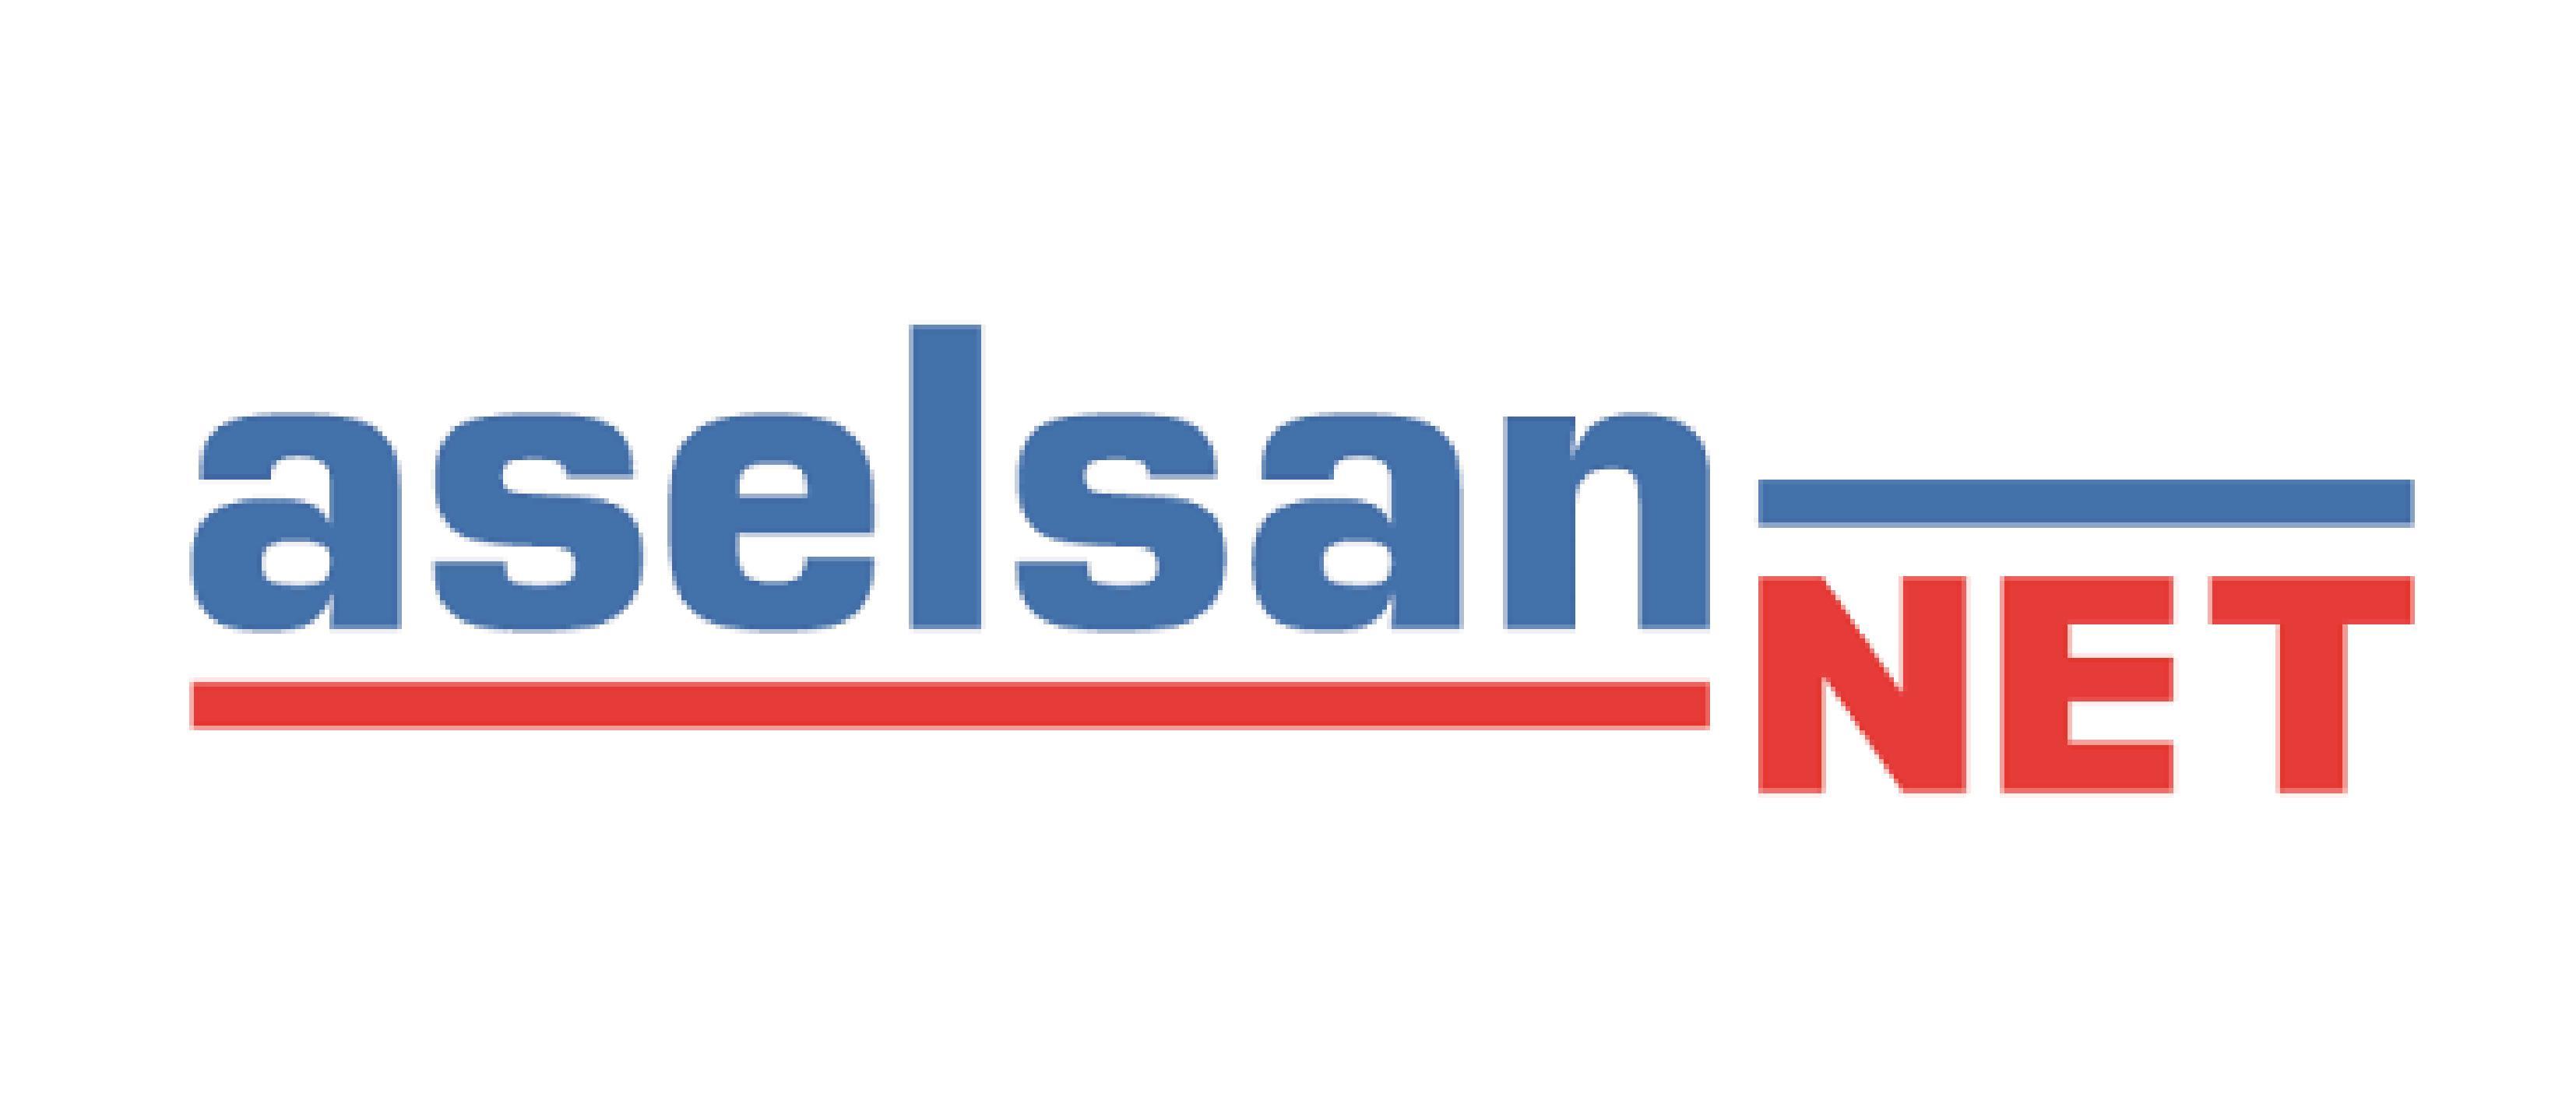 Aselsan Net